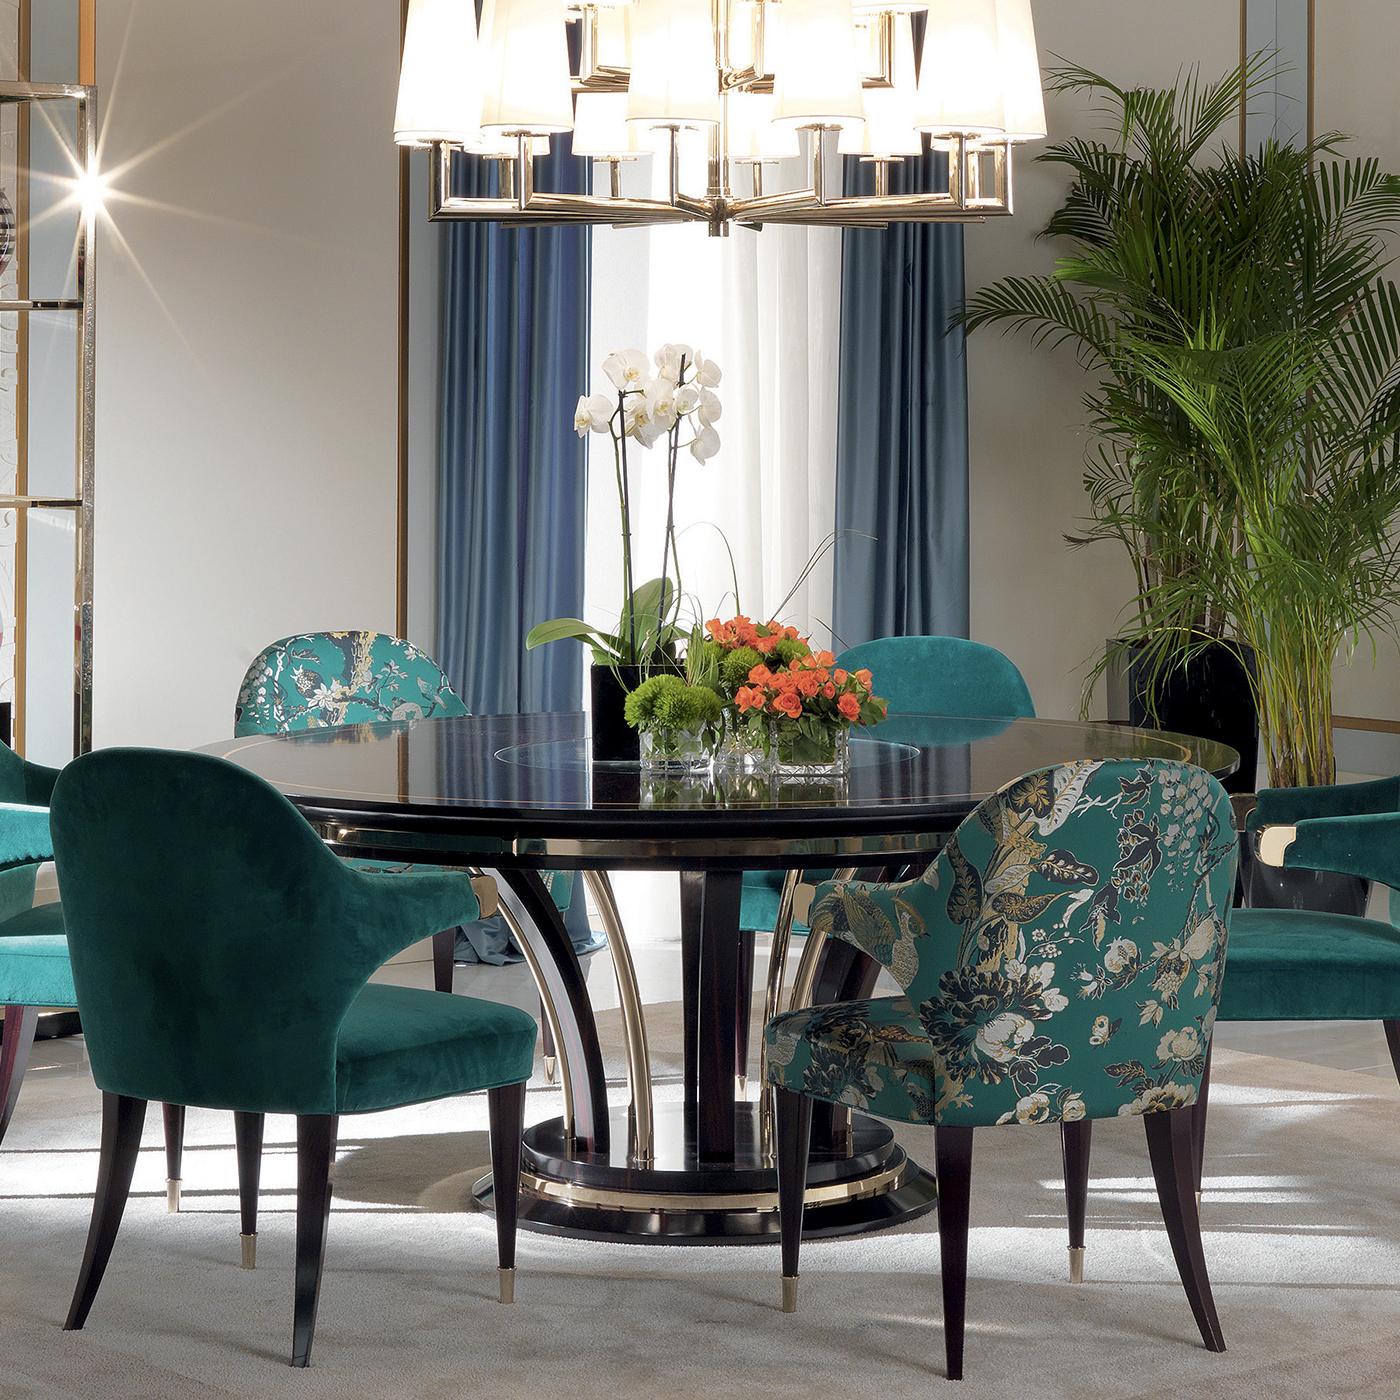 Dieser runde Esstisch gehört zu einer Serie von wunderschönen Möbeln aus Ebenholz und ist eine wunderbare Ergänzung für ein klassisches Haus. Die Kombination aus edlen MATERIALEN und tadelloser Handwerkskunst macht ihn zu einem herausragenden